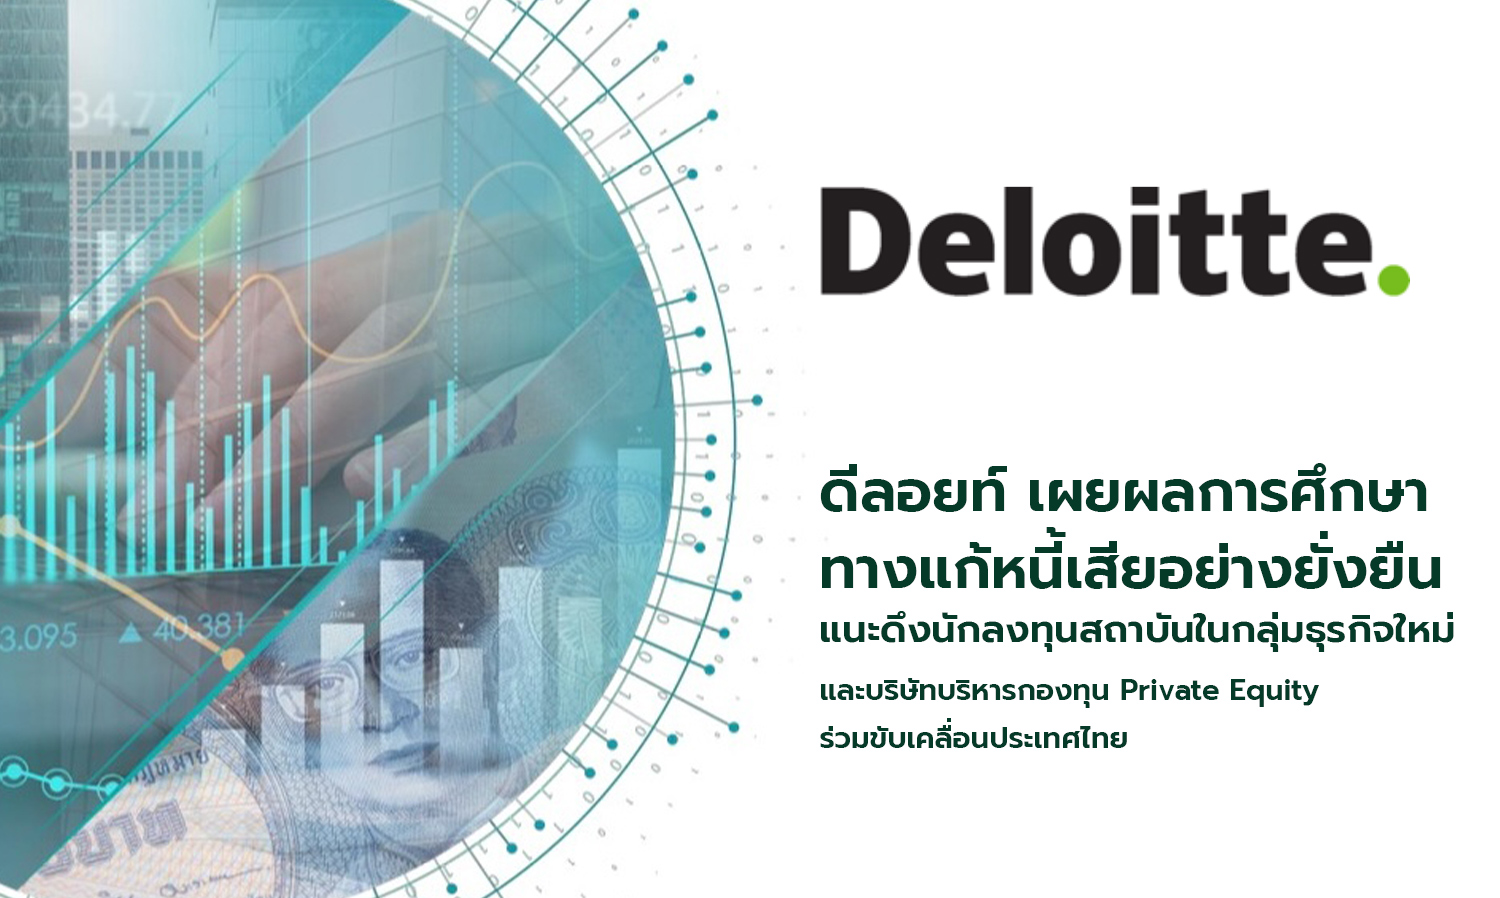 ดีลอยท์ เผยผลการศึกษาทางแก้หนี้เสียอย่างยั่งยืน แนะดึงนักลงทุนสถาบันในกลุ่มธุรกิจใหม่ และบริษัทบริหารกองทุน Private Equity ร่วมขับเคลื่อนประเทศไทย